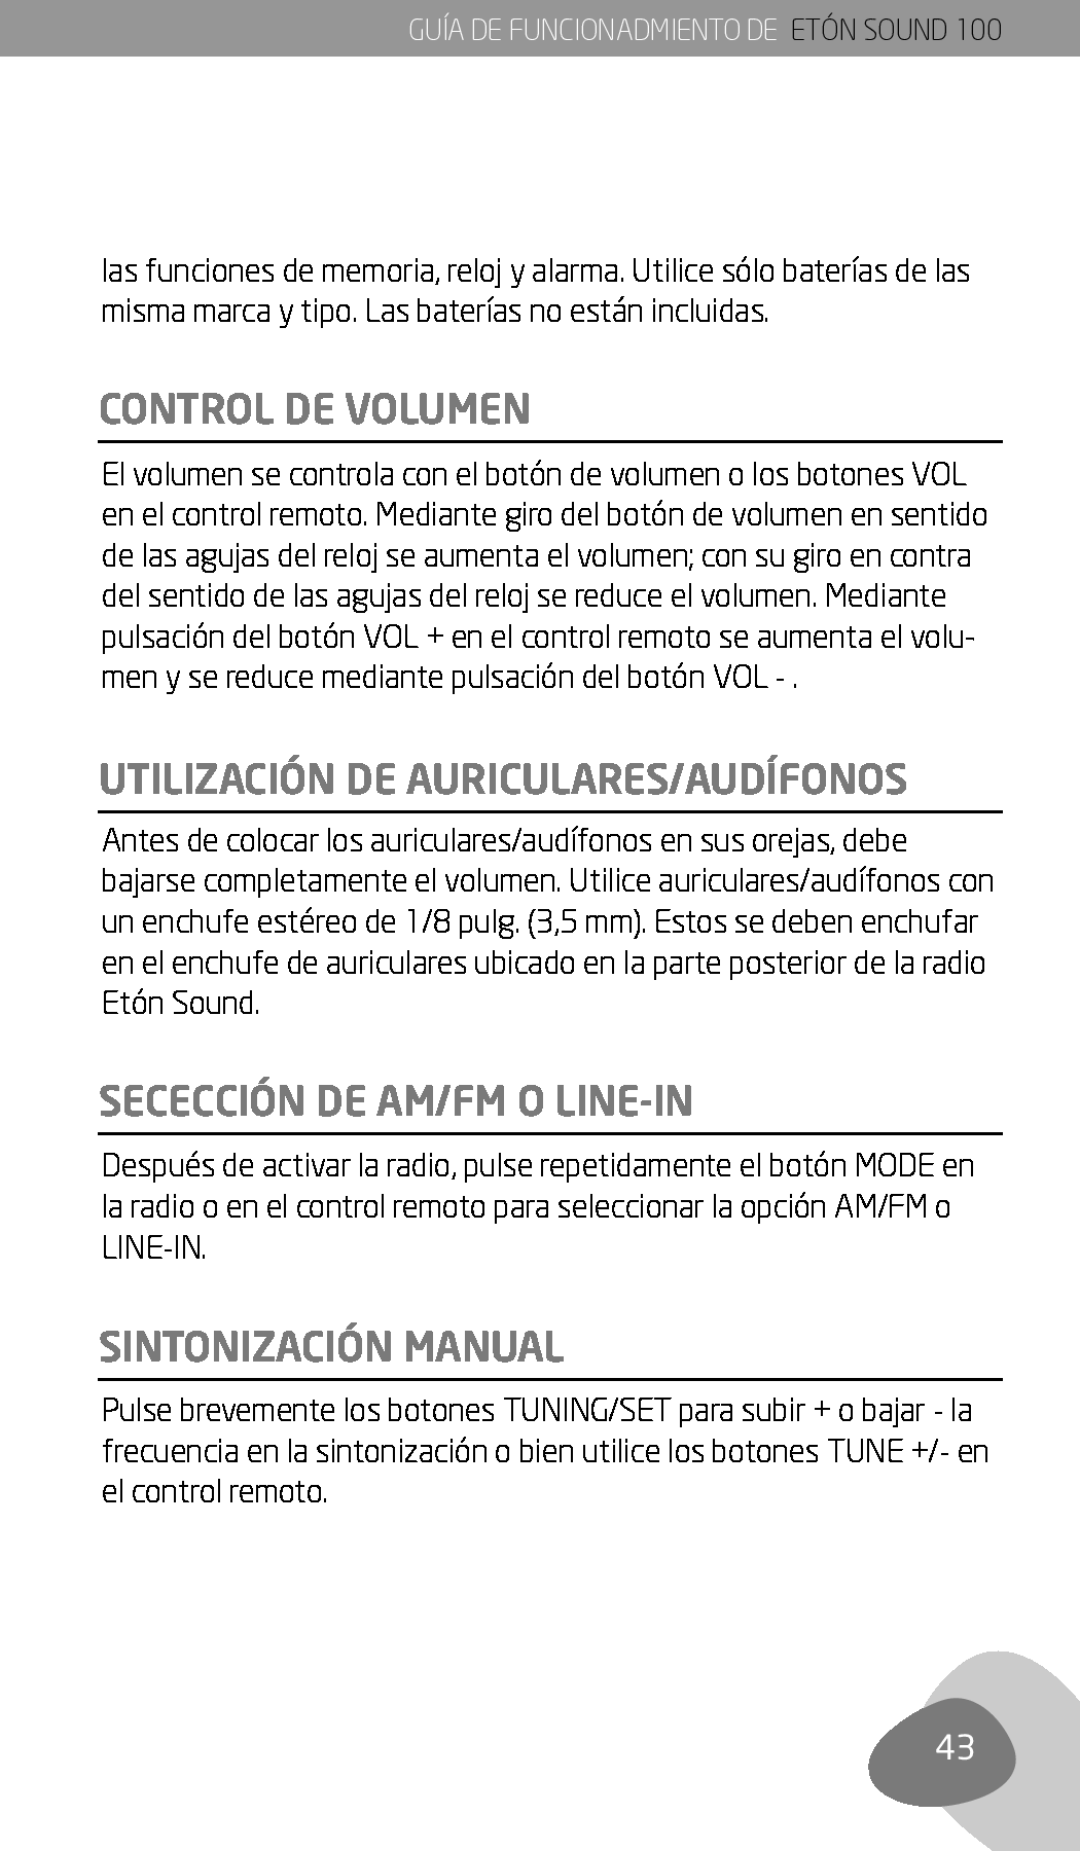 Eton Sound 100 owner manual Control De Volumen, Utilización De Auriculares/Audífonos, Secección De Am/Fm O Line-In 